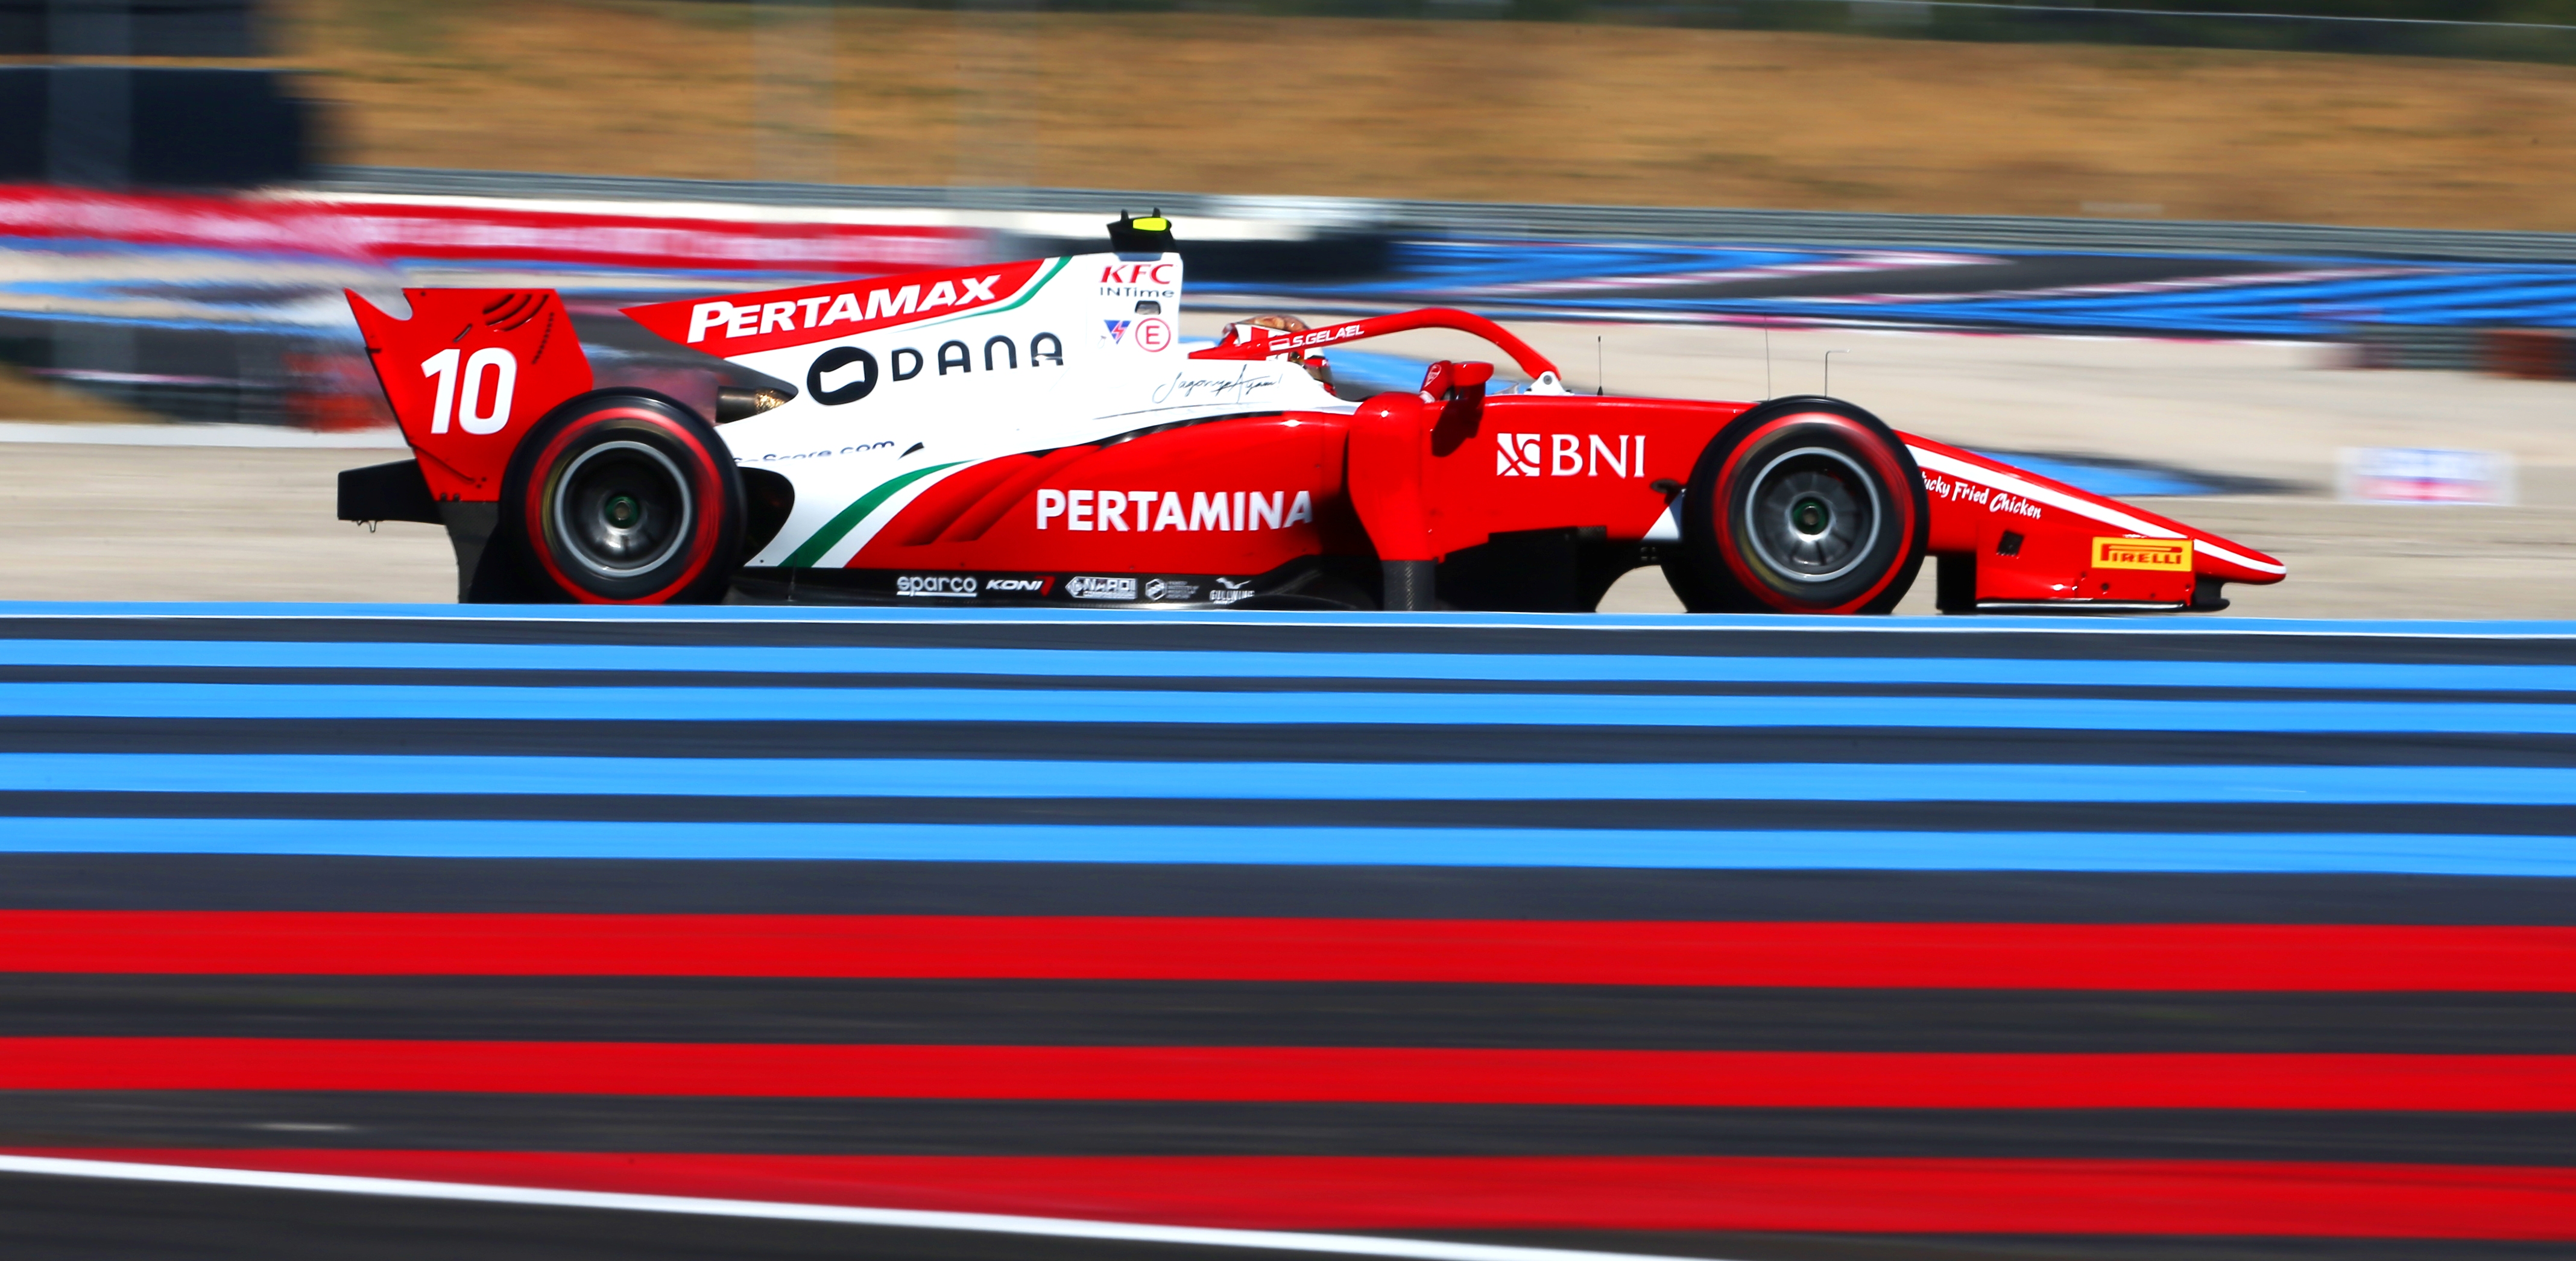 RACE - F2 GP 2019 FRANCE (PAUL RICARD)